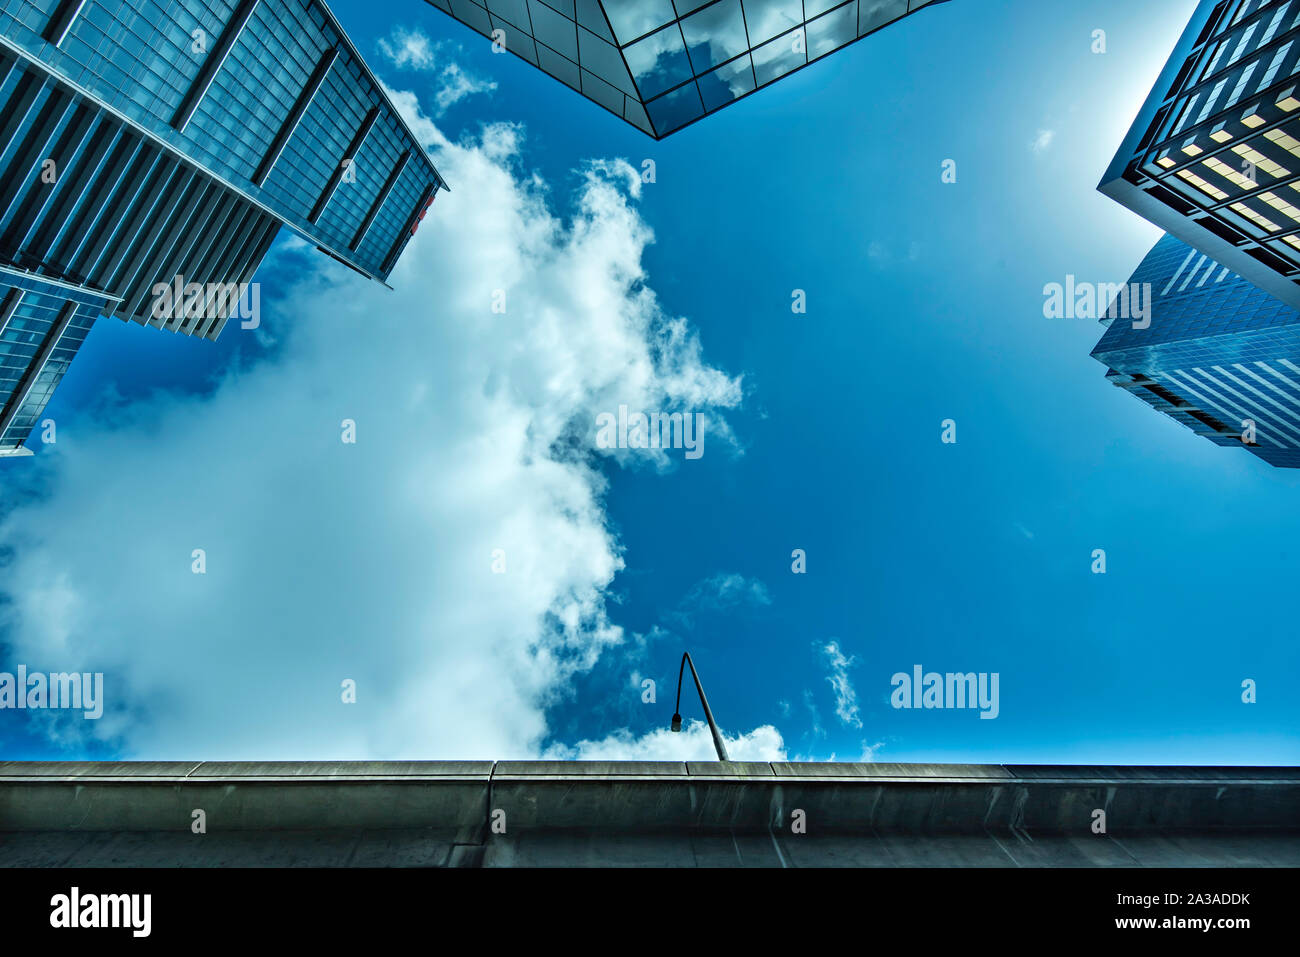 Guardando verso il cielo blu e le nuvole bianche in uno stretto divario tra le crescenti torri anonime, generiche, di vetro per uffici a Sydney, Australia Foto Stock